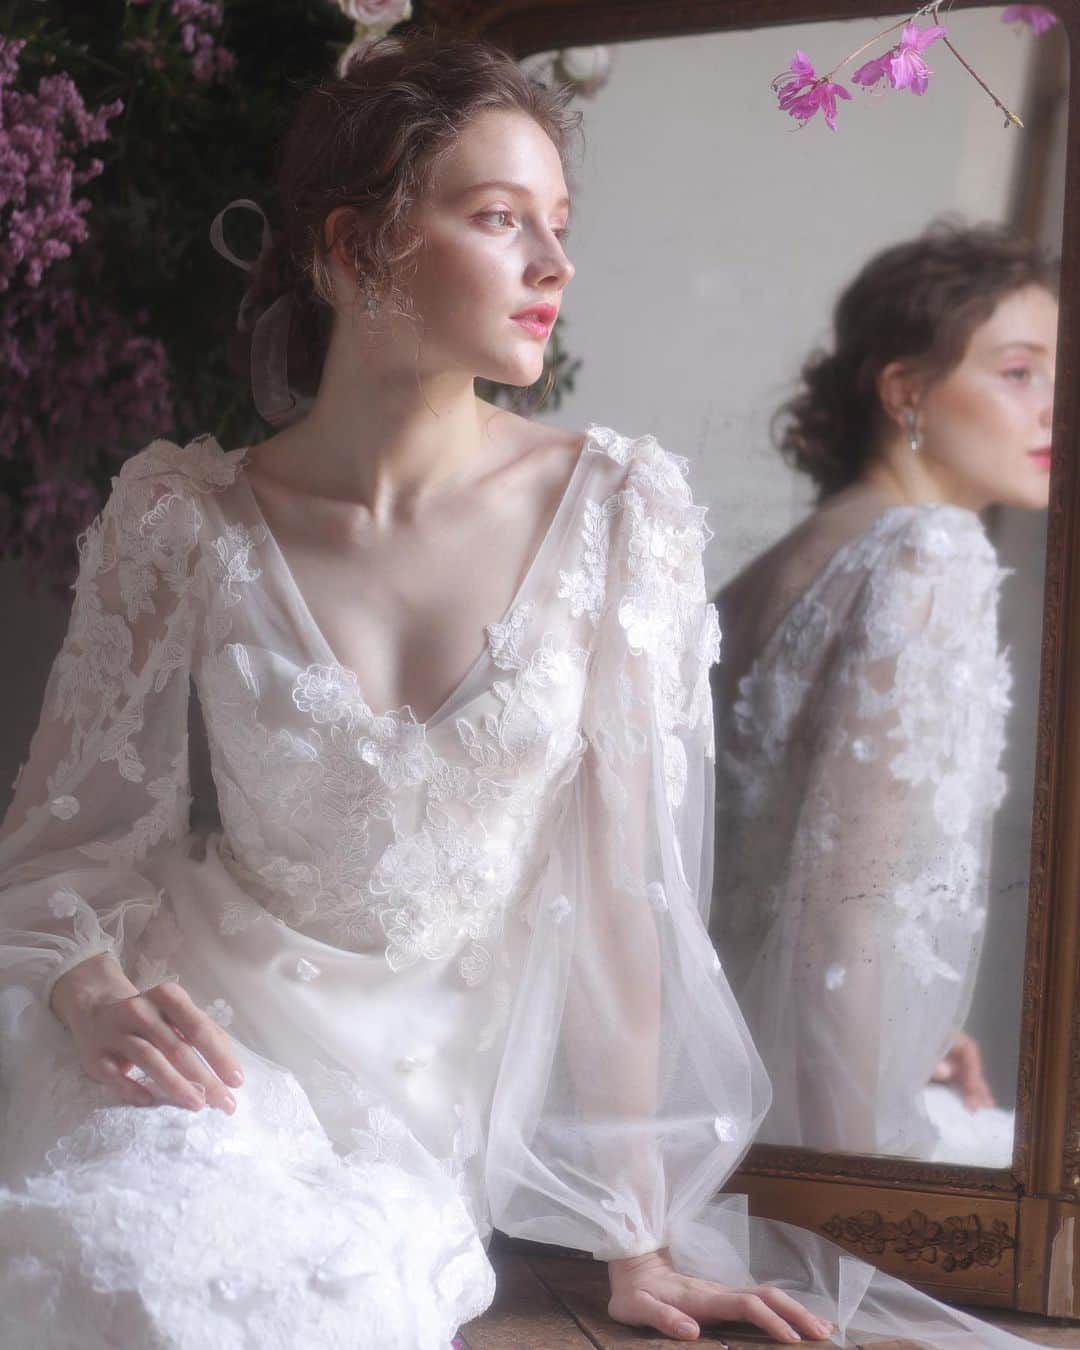 FioreBiancaのインスタグラム：「*﻿ "Elizabeth Fillmore" CECILY﻿ ﻿ たっぷりと施されたフラワーモチーフが﻿ なんともロマンティックな1着﻿ ﻿ 動きに合わせて揺れ動く袖口のリボンが﻿ 花嫁の可憐さを際立たせます﻿ ﻿ 天使のようなオーラをまとう繊細なドレスで﻿ ゲストの視線をさらって﻿ ﻿ *﻿ *﻿ *﻿ @fiorebianca_wedding  @efbridal  #elizabethfillmore  #fiorebianca_wedding﻿ #fiorebianca﻿ #weddingdress﻿ #エリザベスフィルモア  #ロングスリーブドレス #フィオーレビアンカ﻿ #ドレスショップ﻿ #ウエディングドレス﻿ #ウェディングドレス﻿ #フラワーモチーフドレス  #お色直しドレス﻿ #ドレス試着﻿ #ドレス選び﻿ #ドレス探し﻿ #ドレス迷子﻿ #プレ花嫁﻿ #2021冬婚﻿ #2021春婚﻿ #2021夏婚﻿ #2021秋婚」